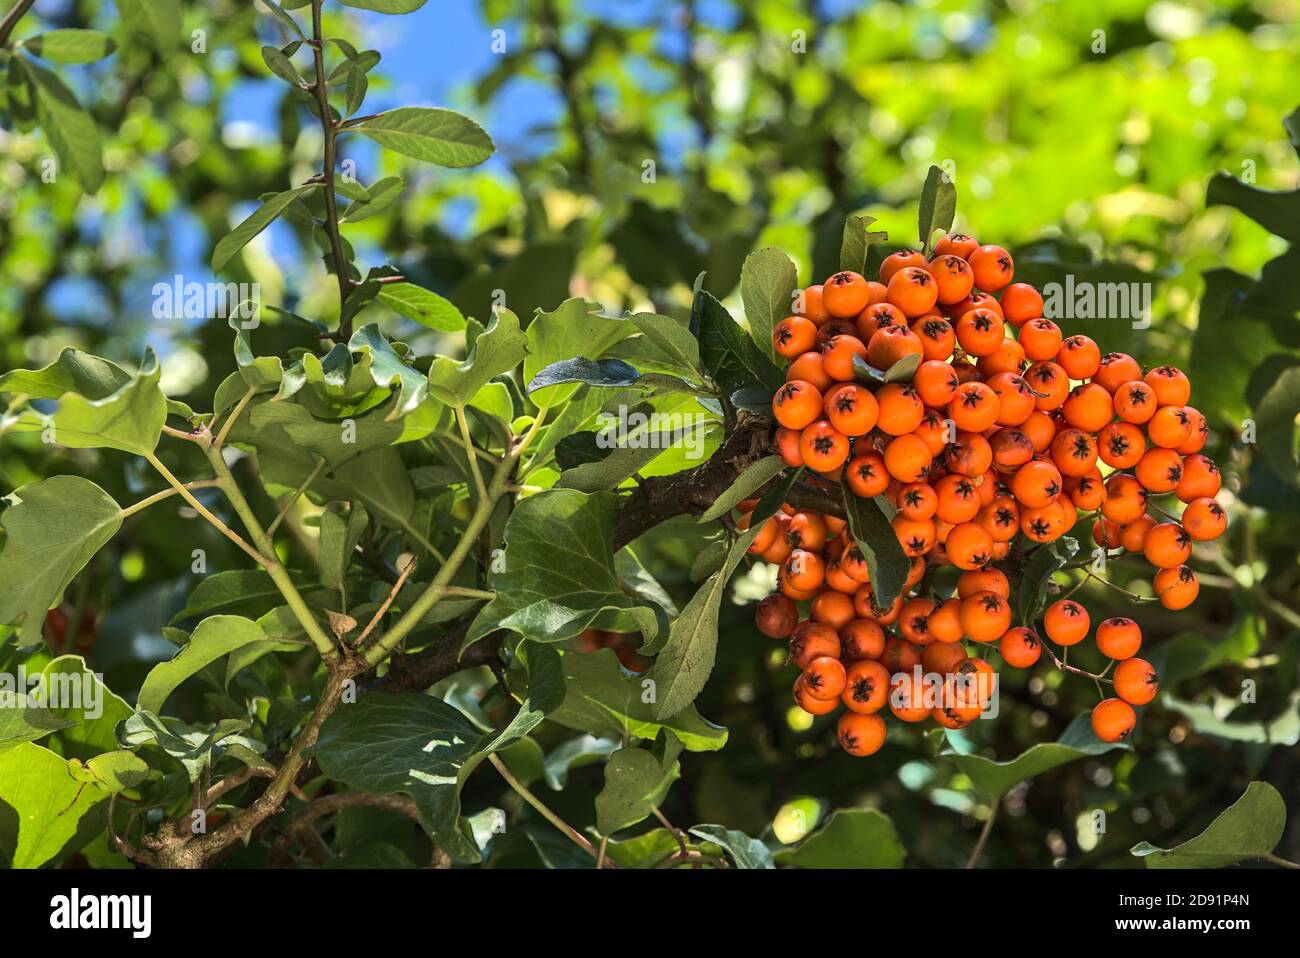 Belles baies d'aubépine mûres d'orange (Pyracantha angustifolia) sur arbre avec feuilles vertes. Absolument incroyable automne coloré nature vibes Banque D'Images